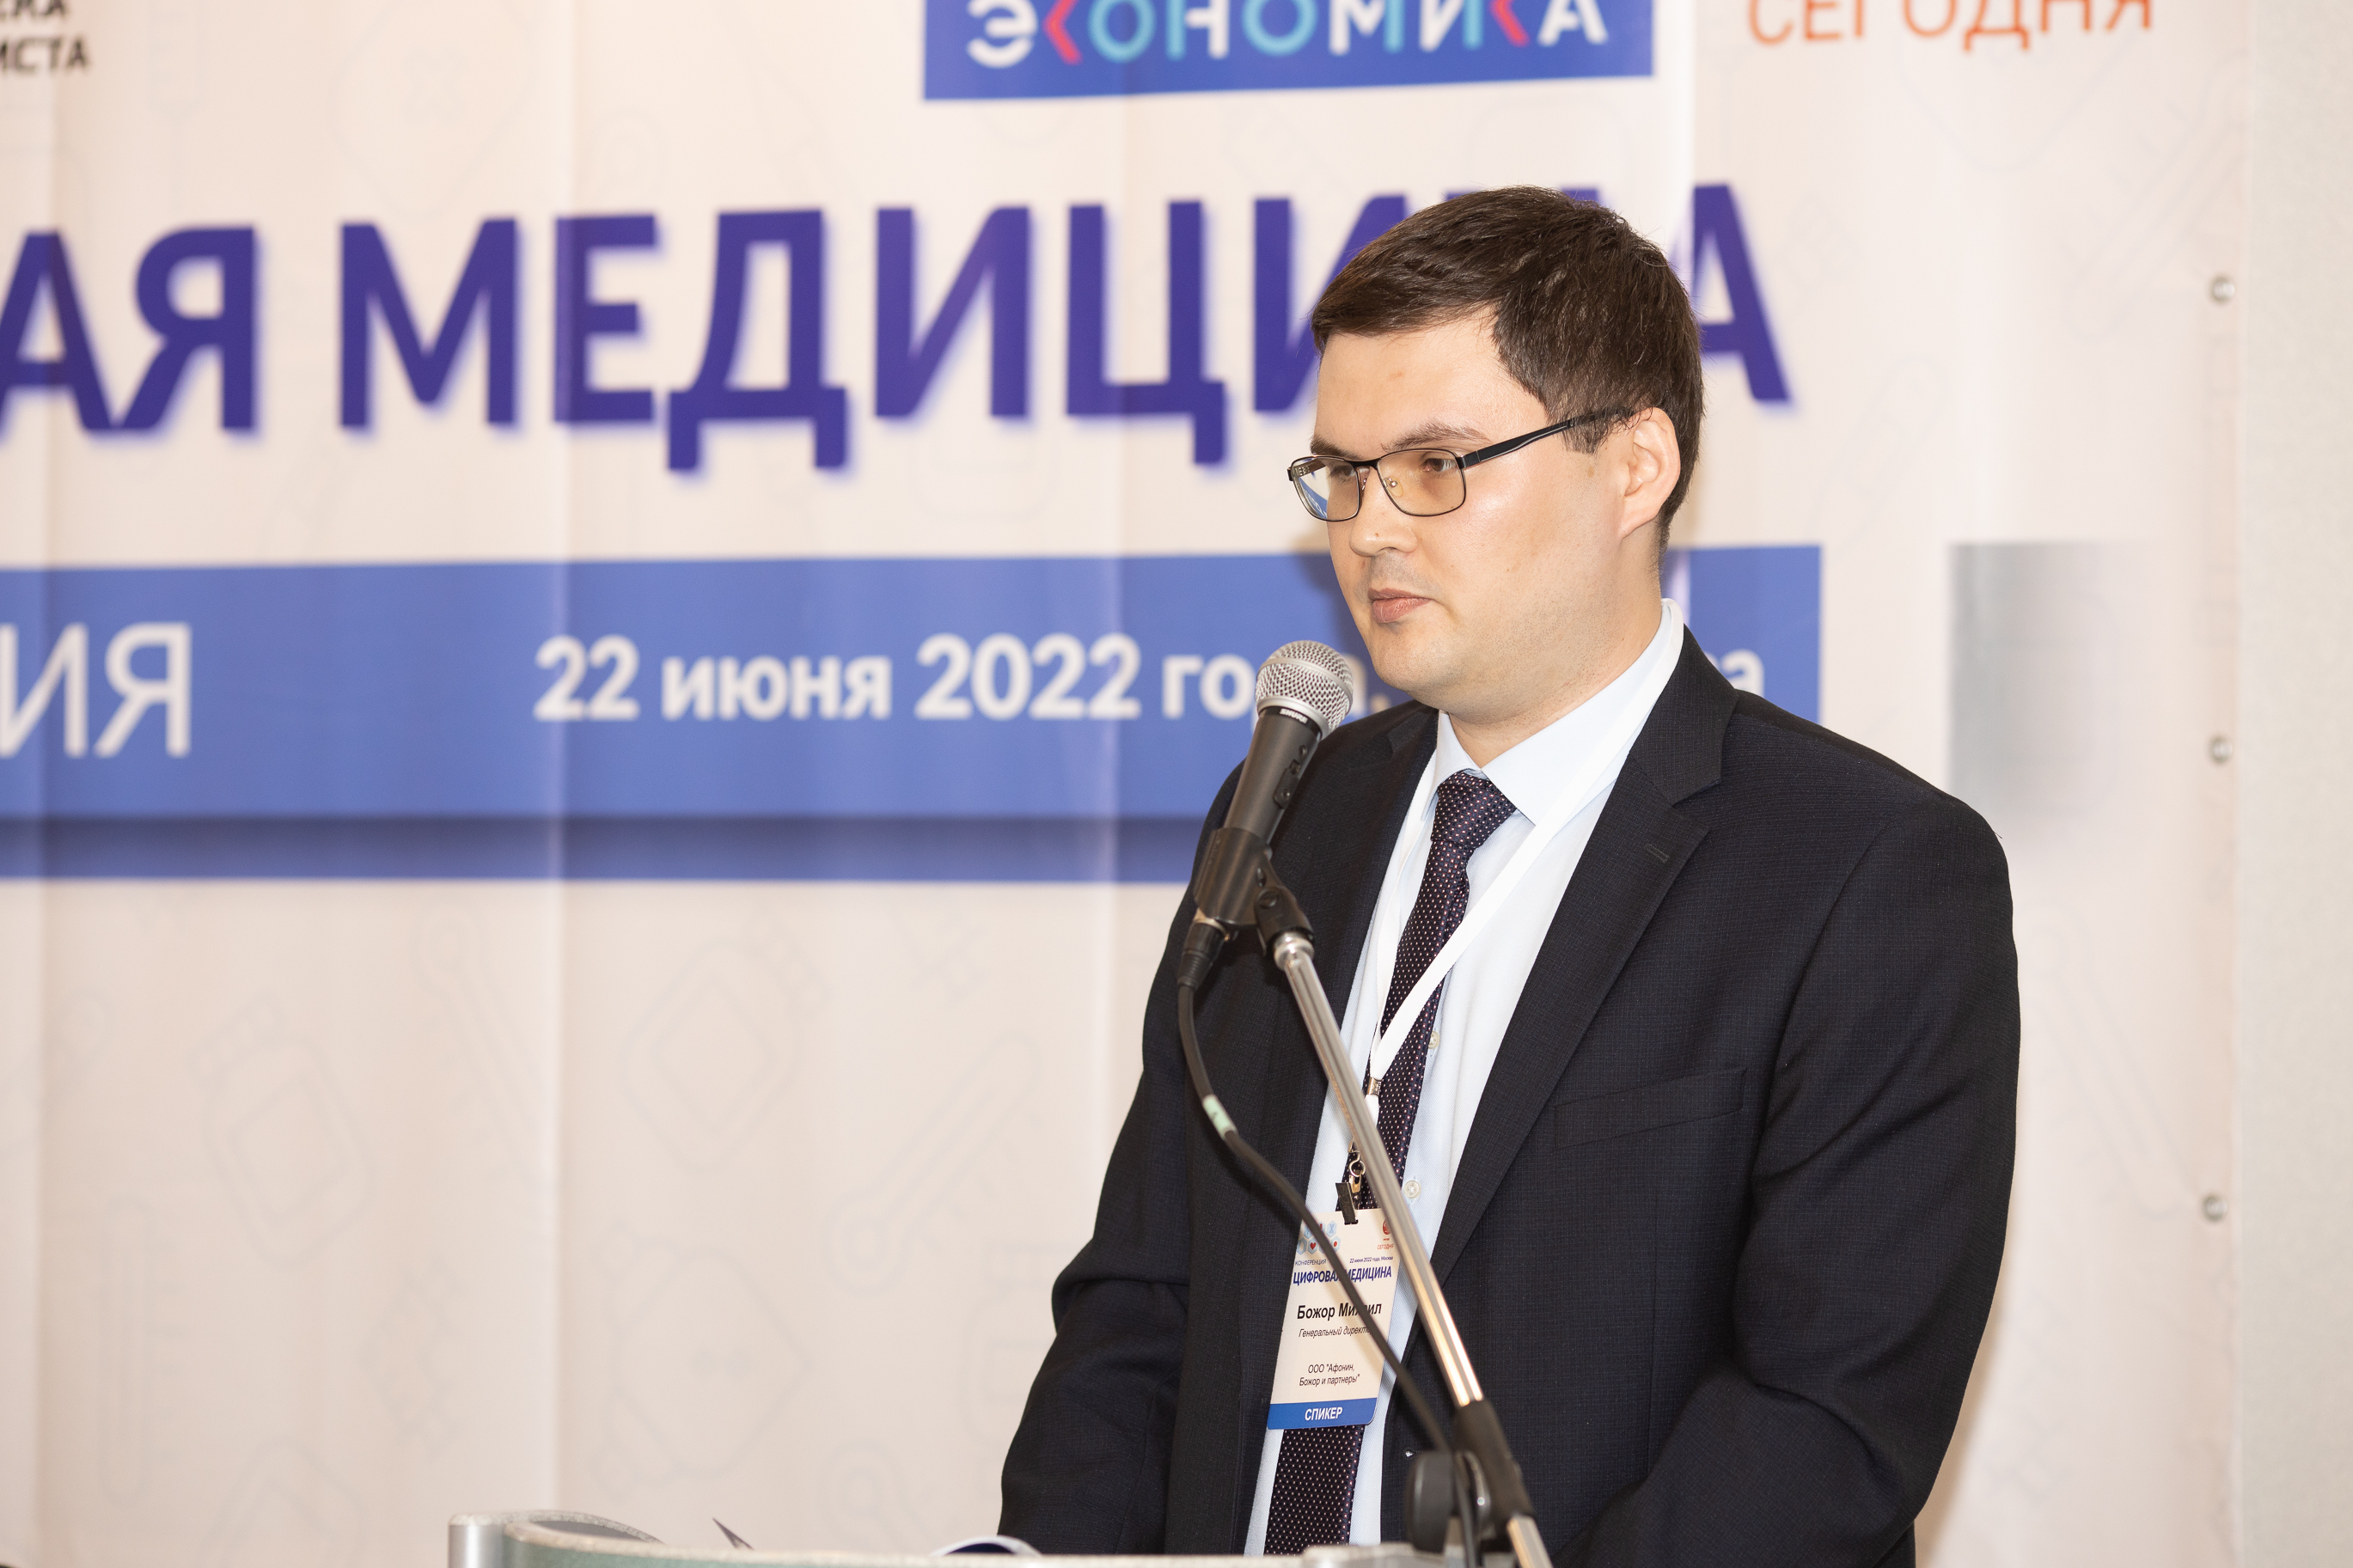 Генеральный директор Божор М.Ю. выступил с докладом на конференции "Цифровая медицина 2022"